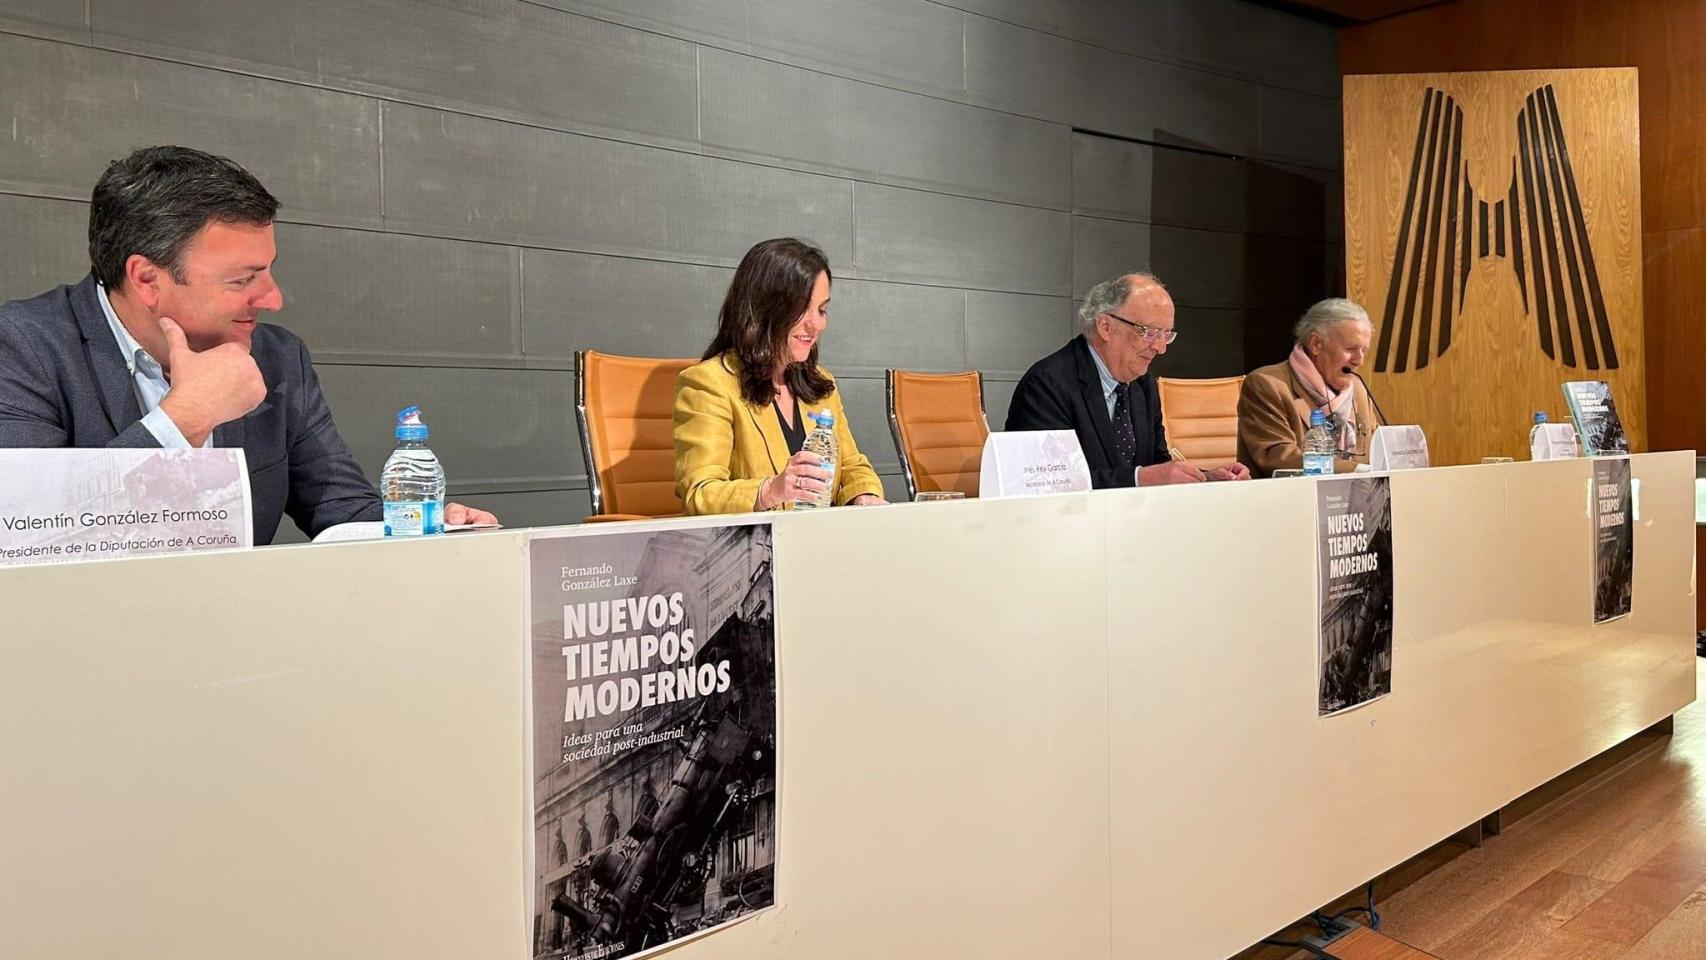 Fernando González Laxe presenta en A Coruña su libro ‘Nuevos tiempos modernos’